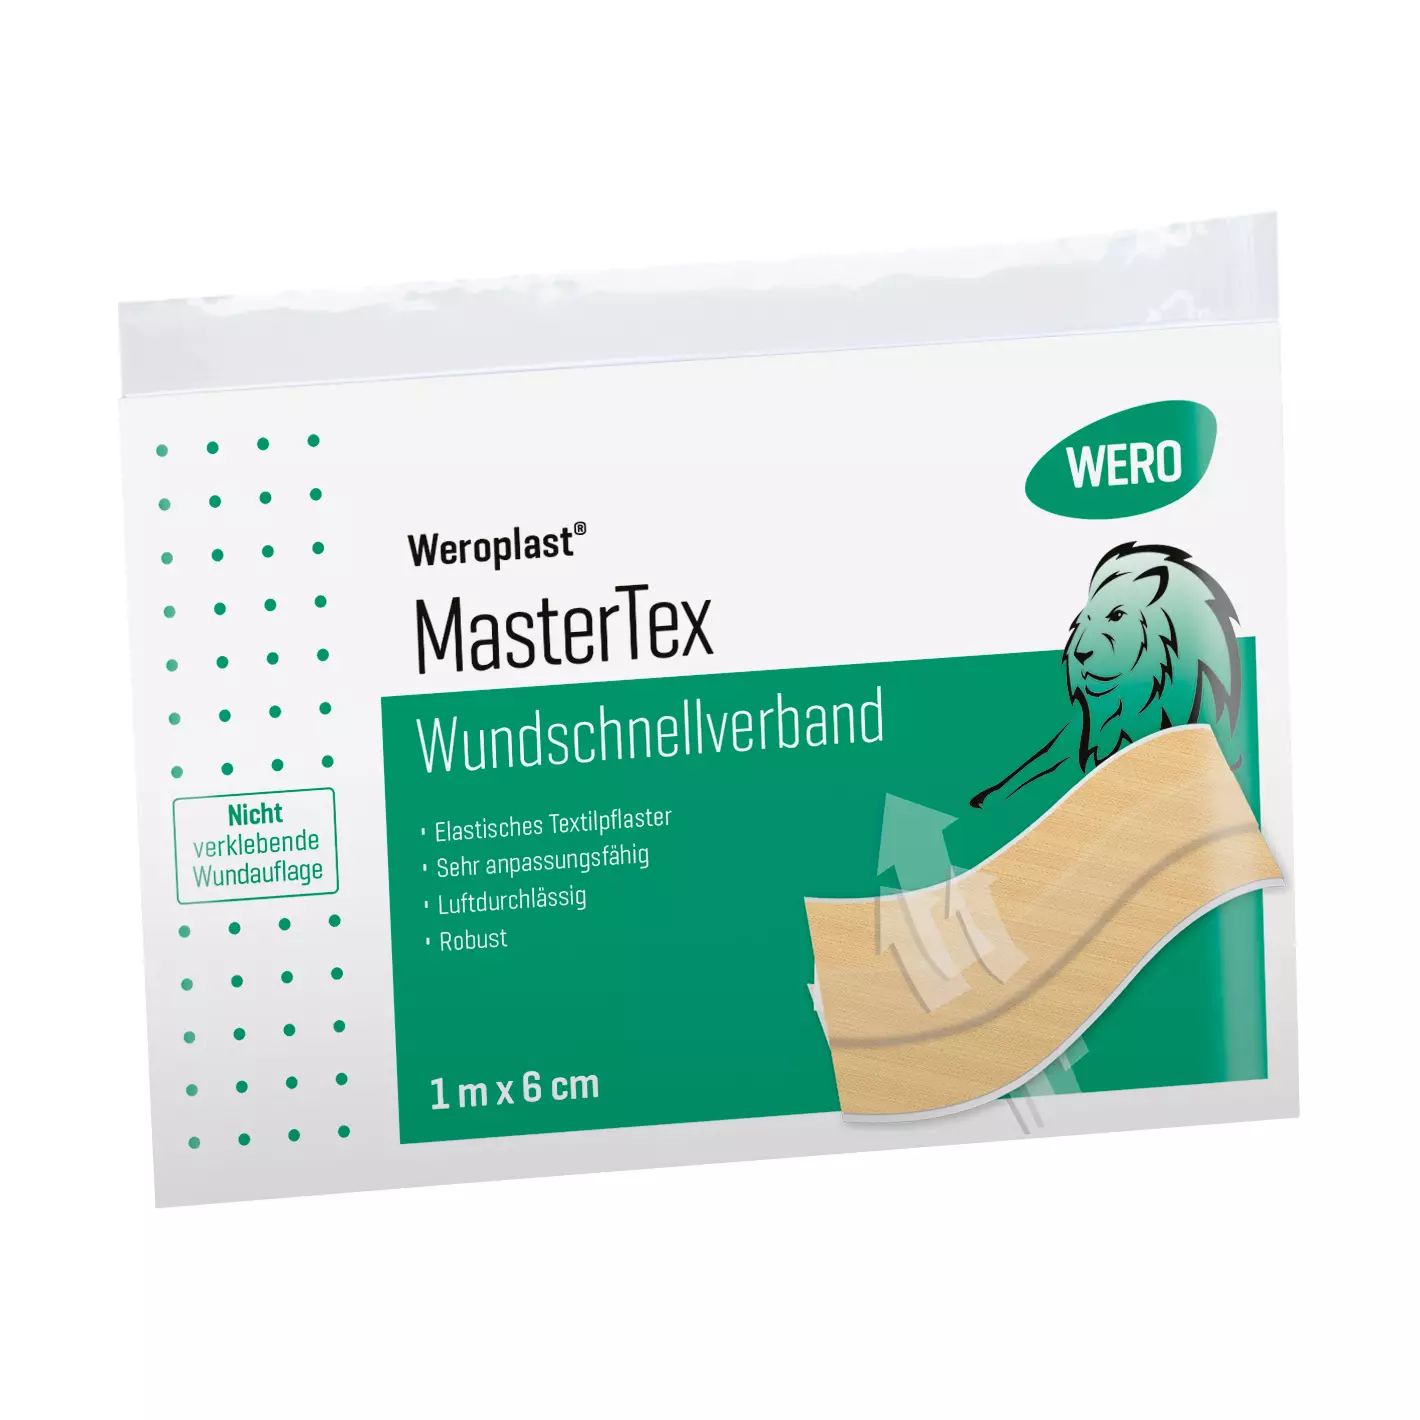 Wundschnellverband Weroplast® MasterTex - 6 cm, 1 m